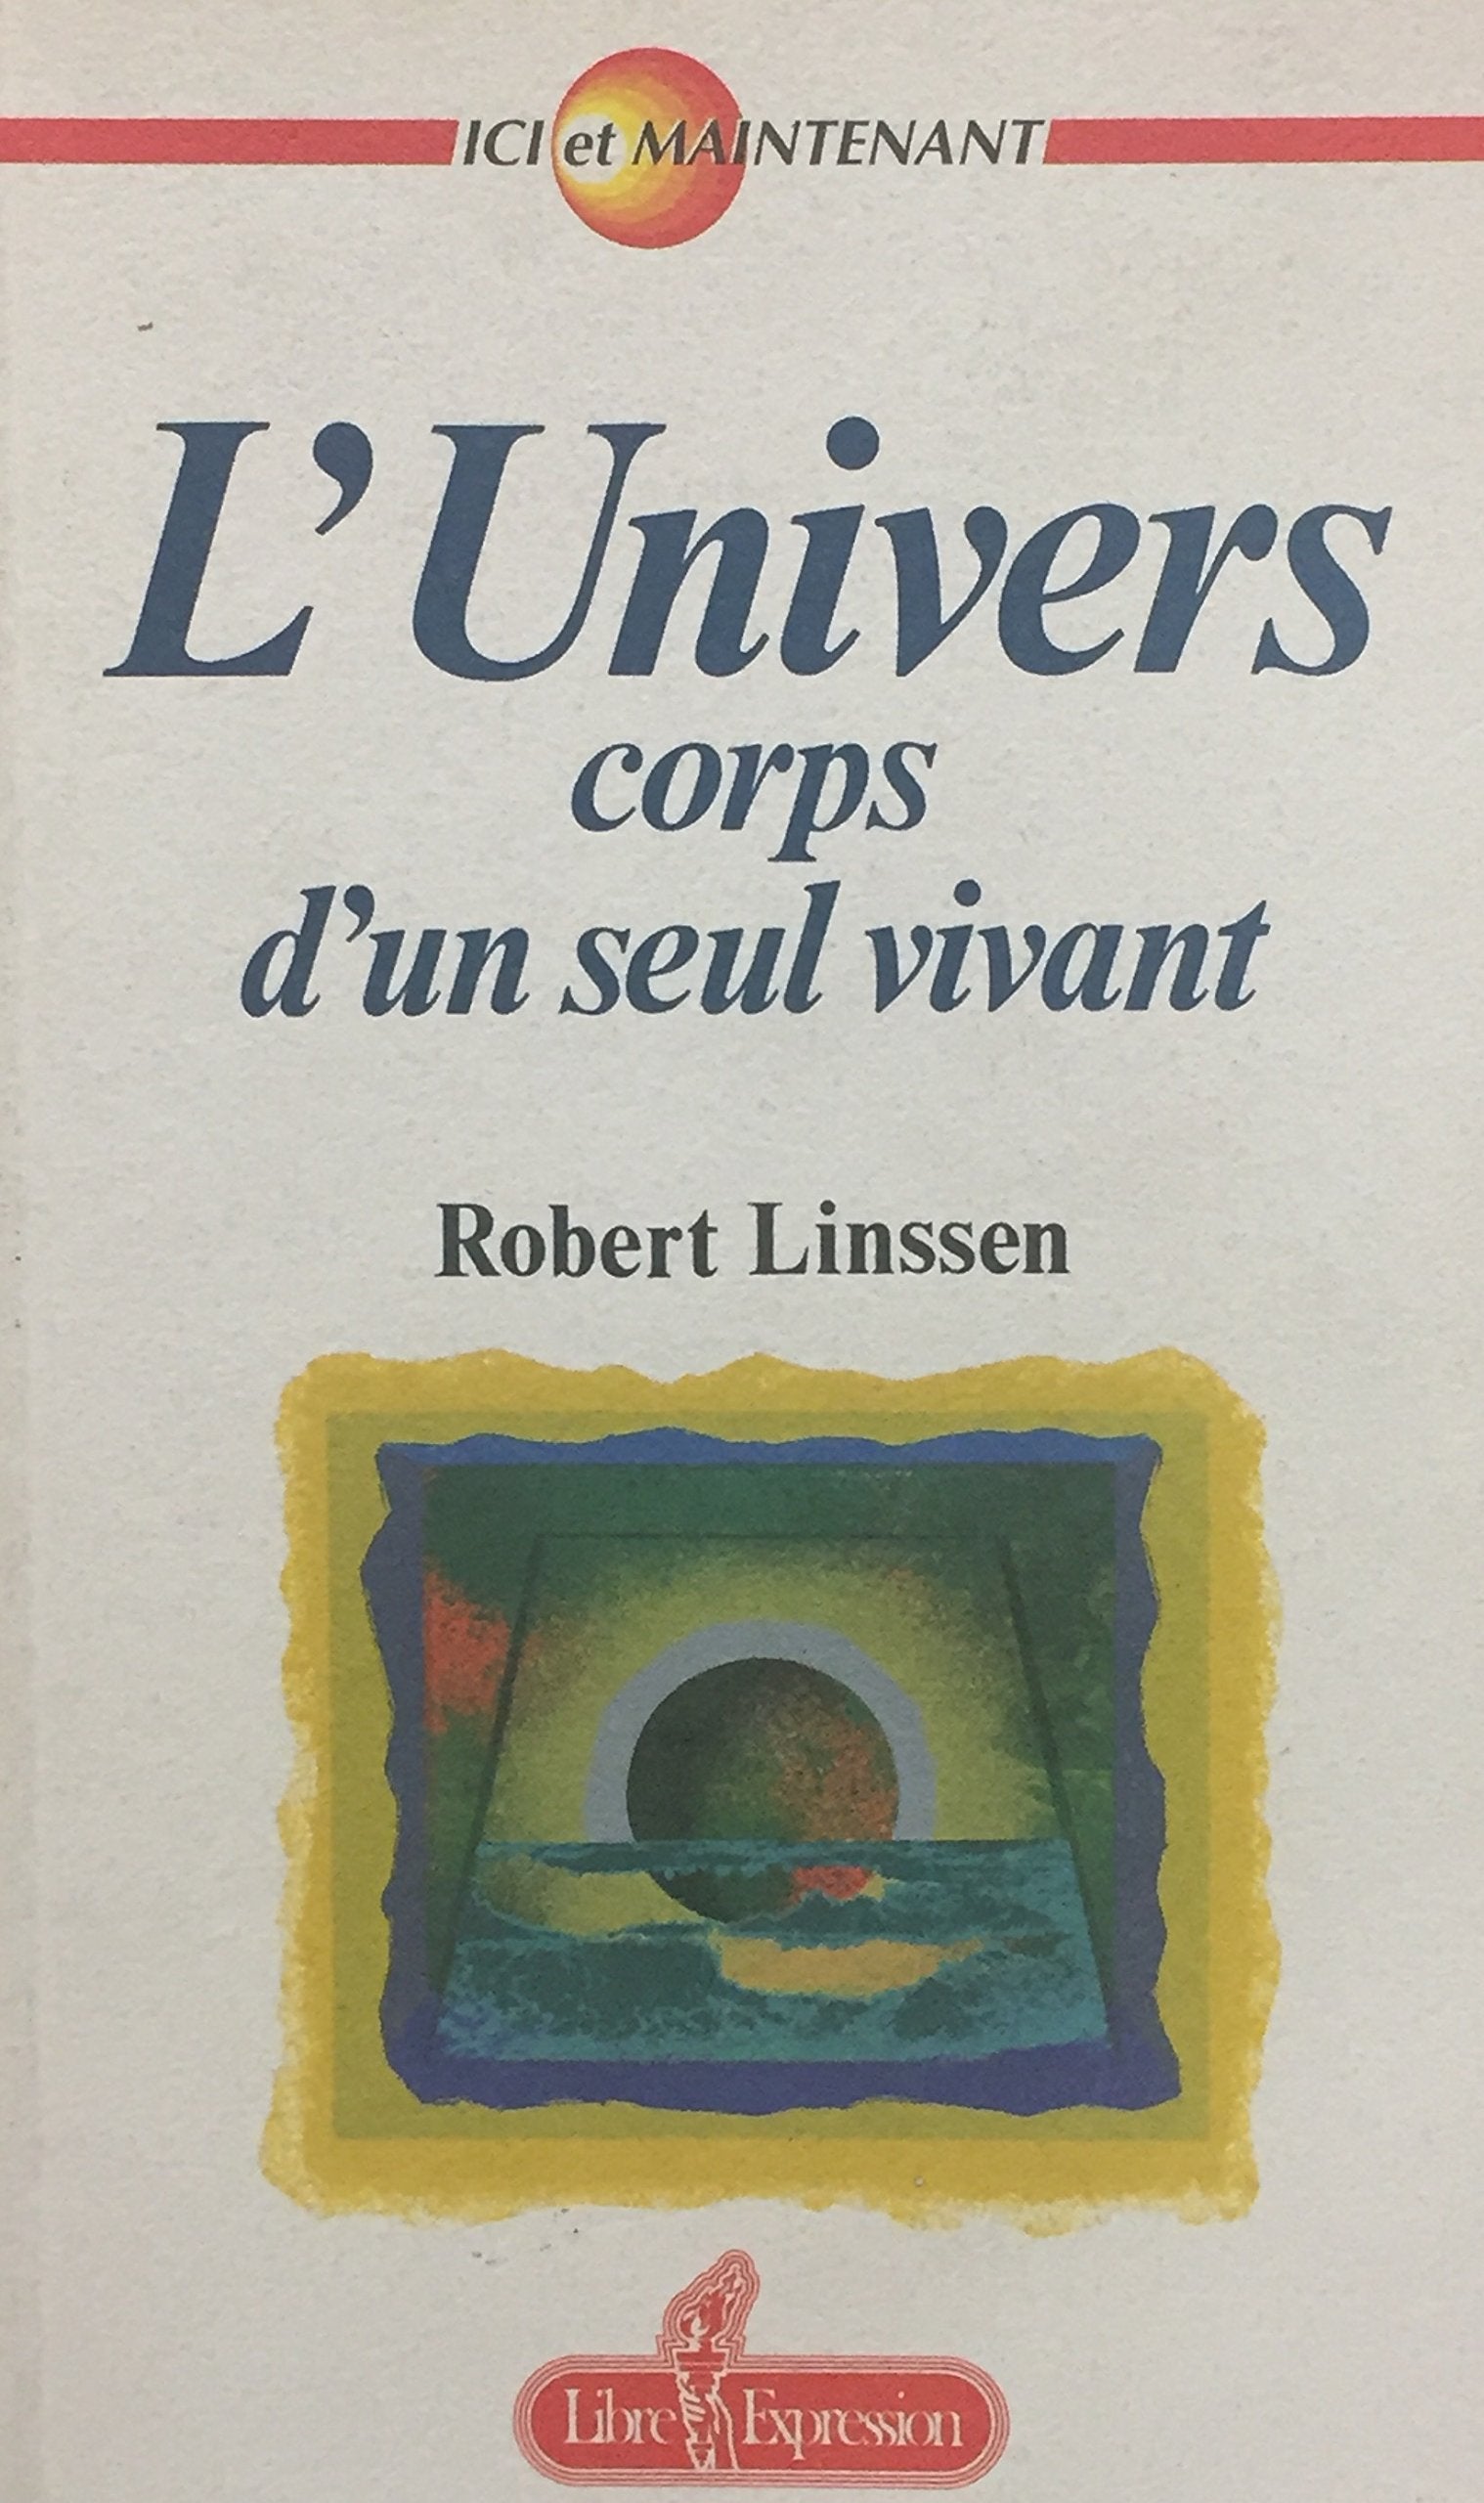 Livre ISBN 2891114043 Ici et maintenant : L'Univers : corps vivant d'un seul vivant (Robert Linssen)